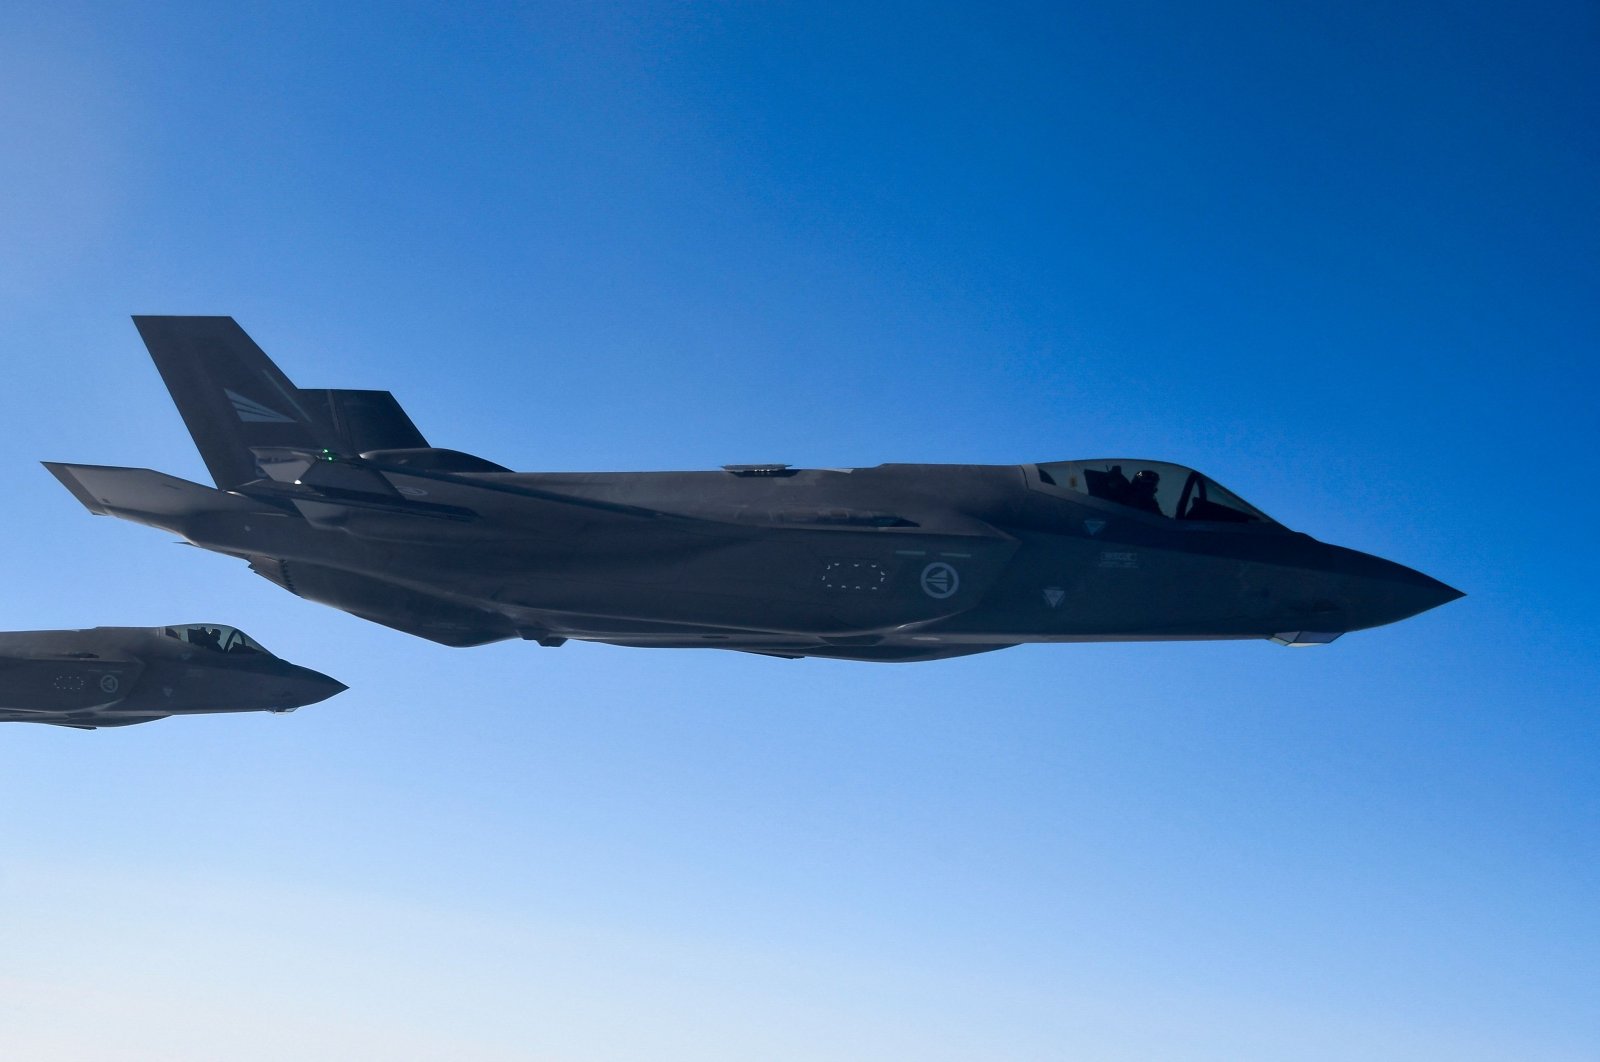 Kanada berencana untuk membeli 88 F-35 dalam potensi kesepakatan bernilai miliaran dolar